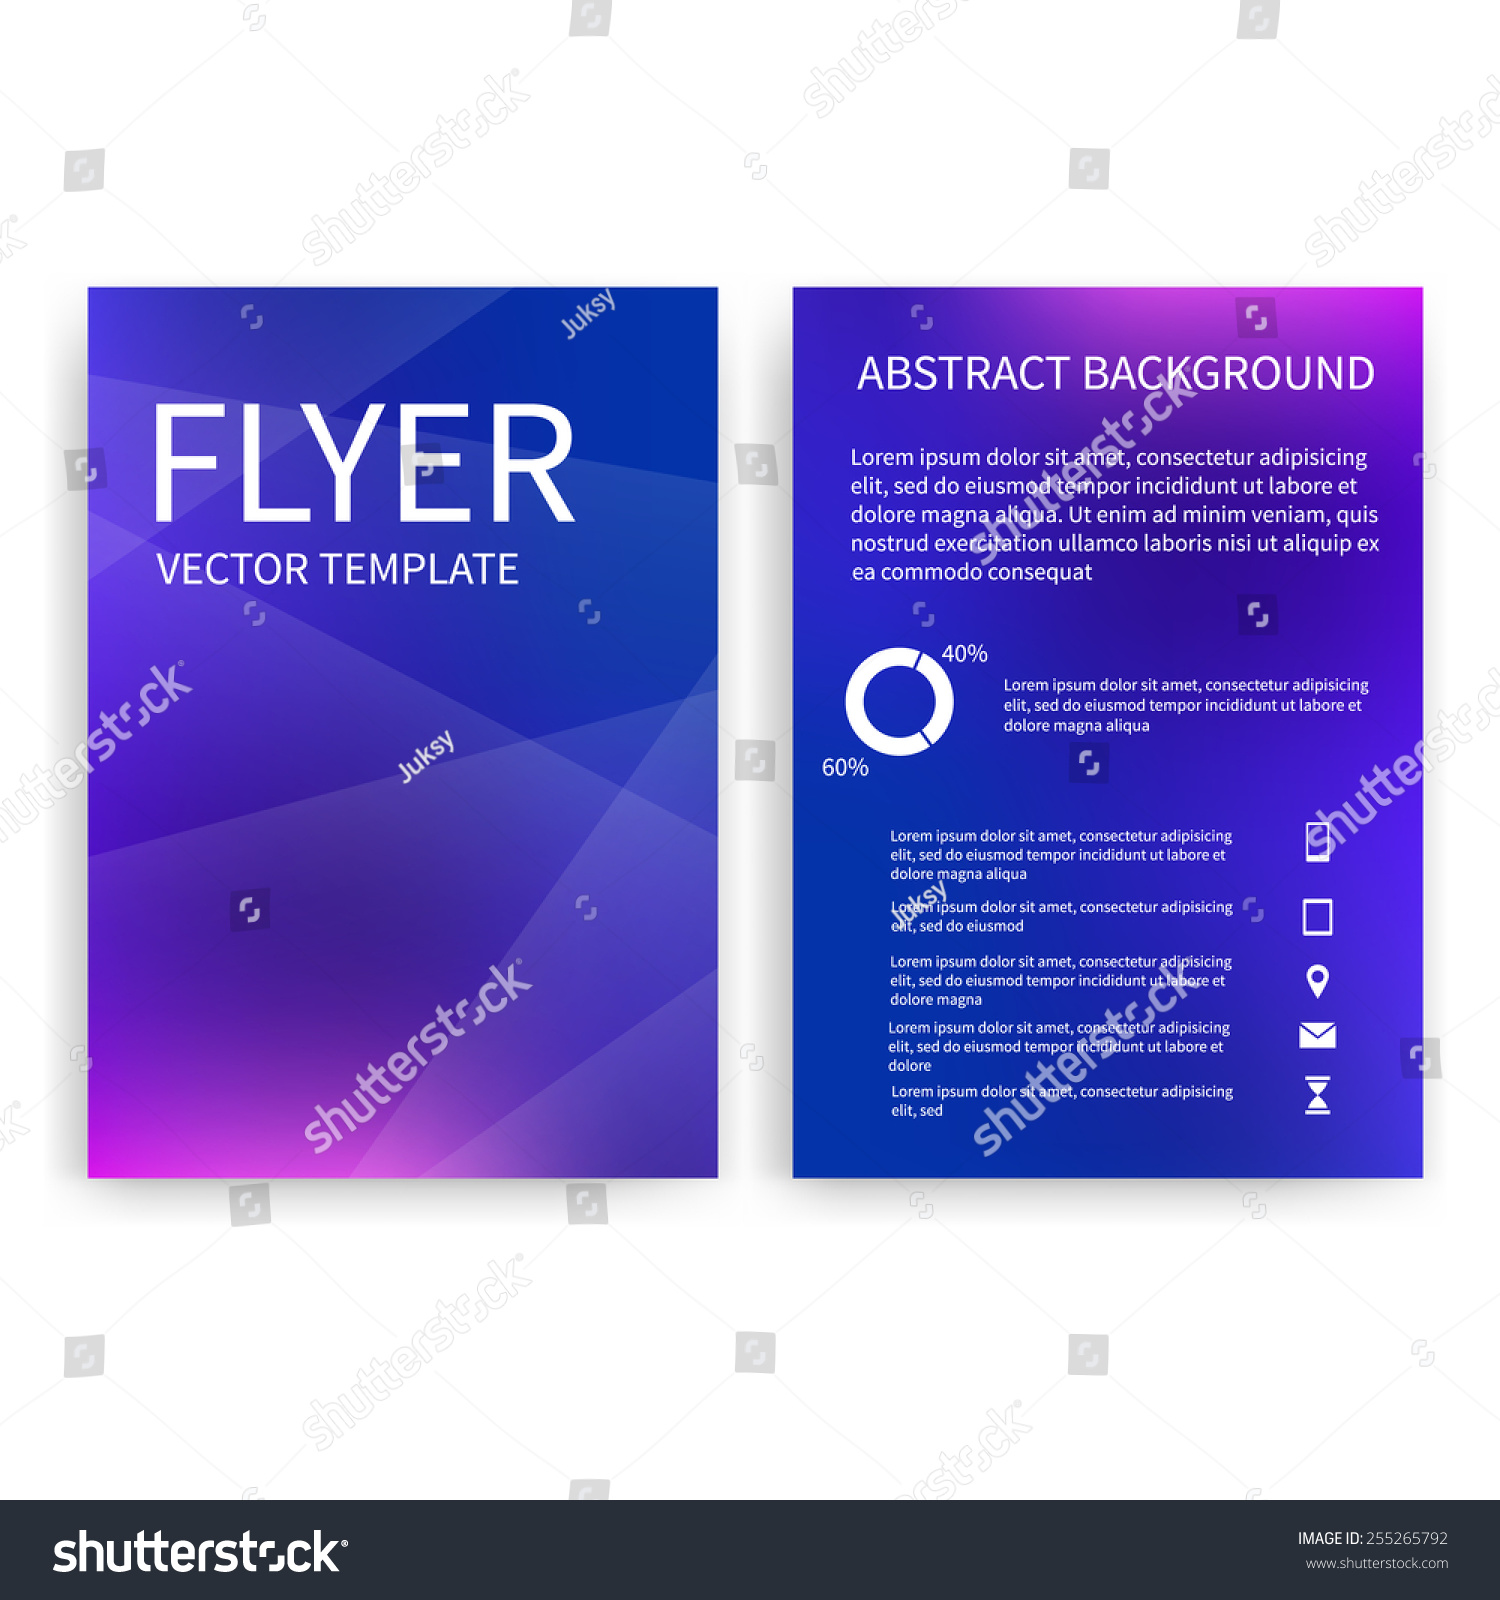 Edit Vectors Free Online - Flyer design | Shutterstock Editor